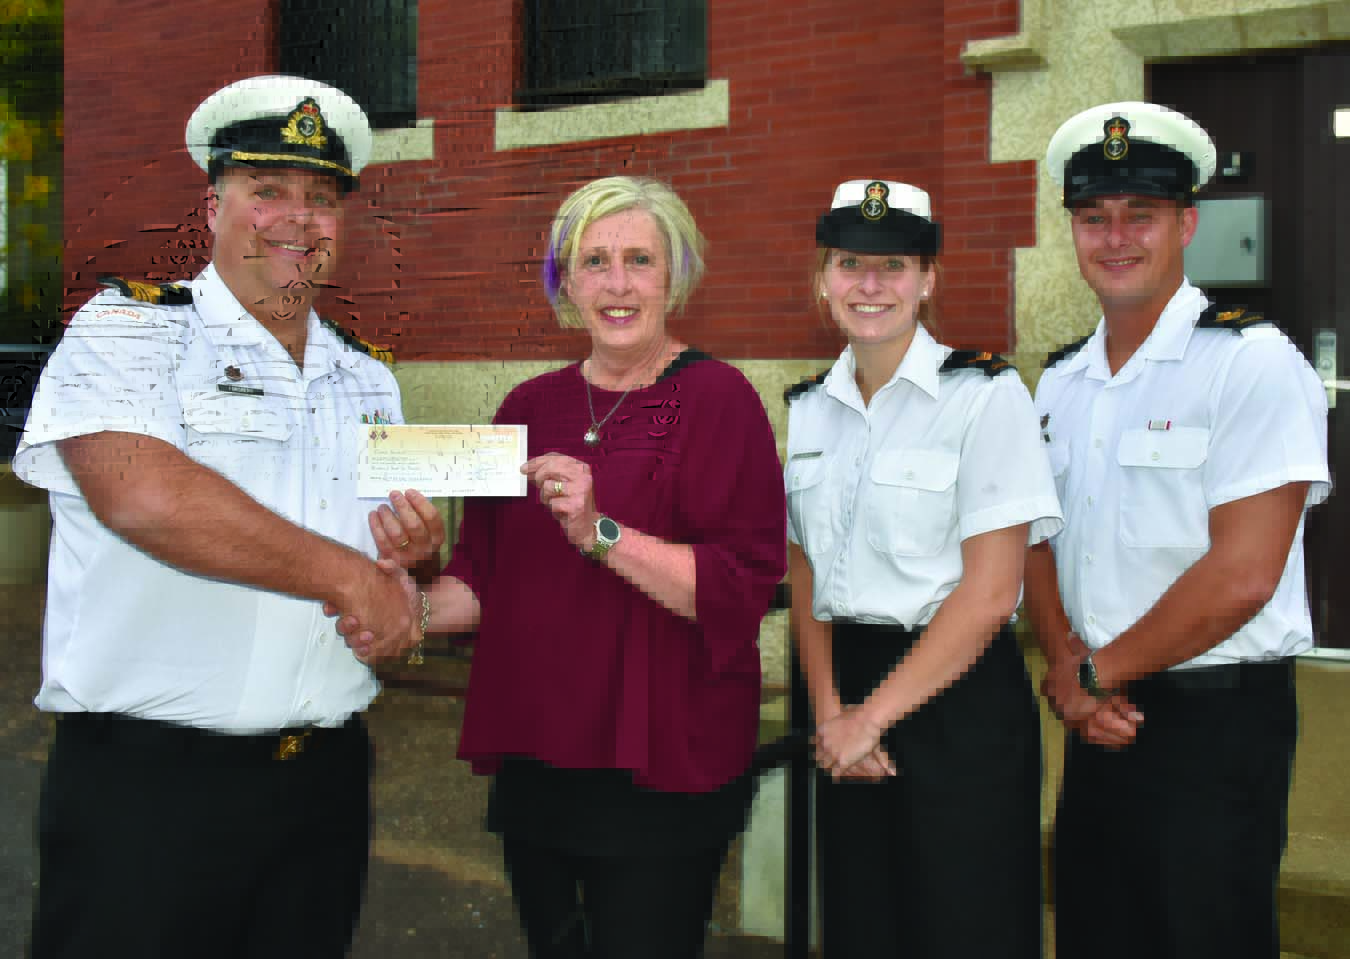 HMCS Donation